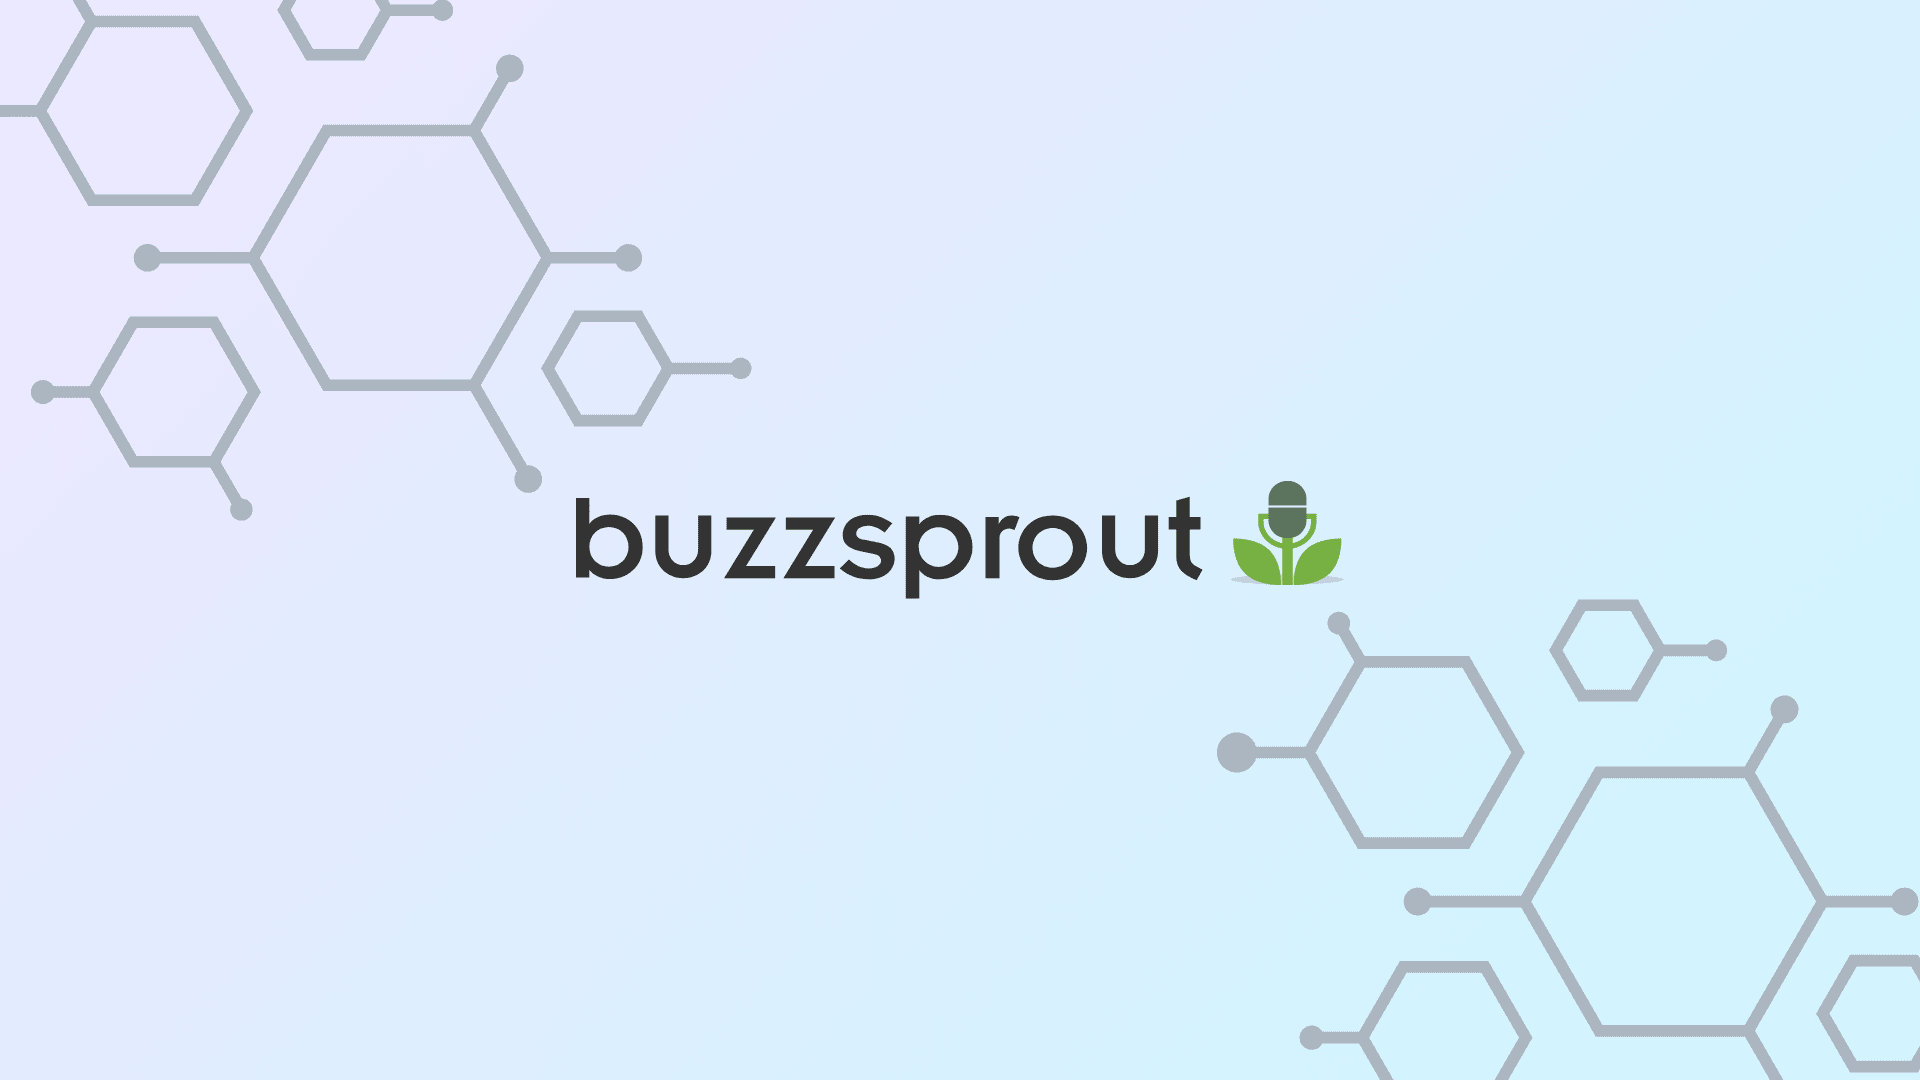 Buzzsprout Logo